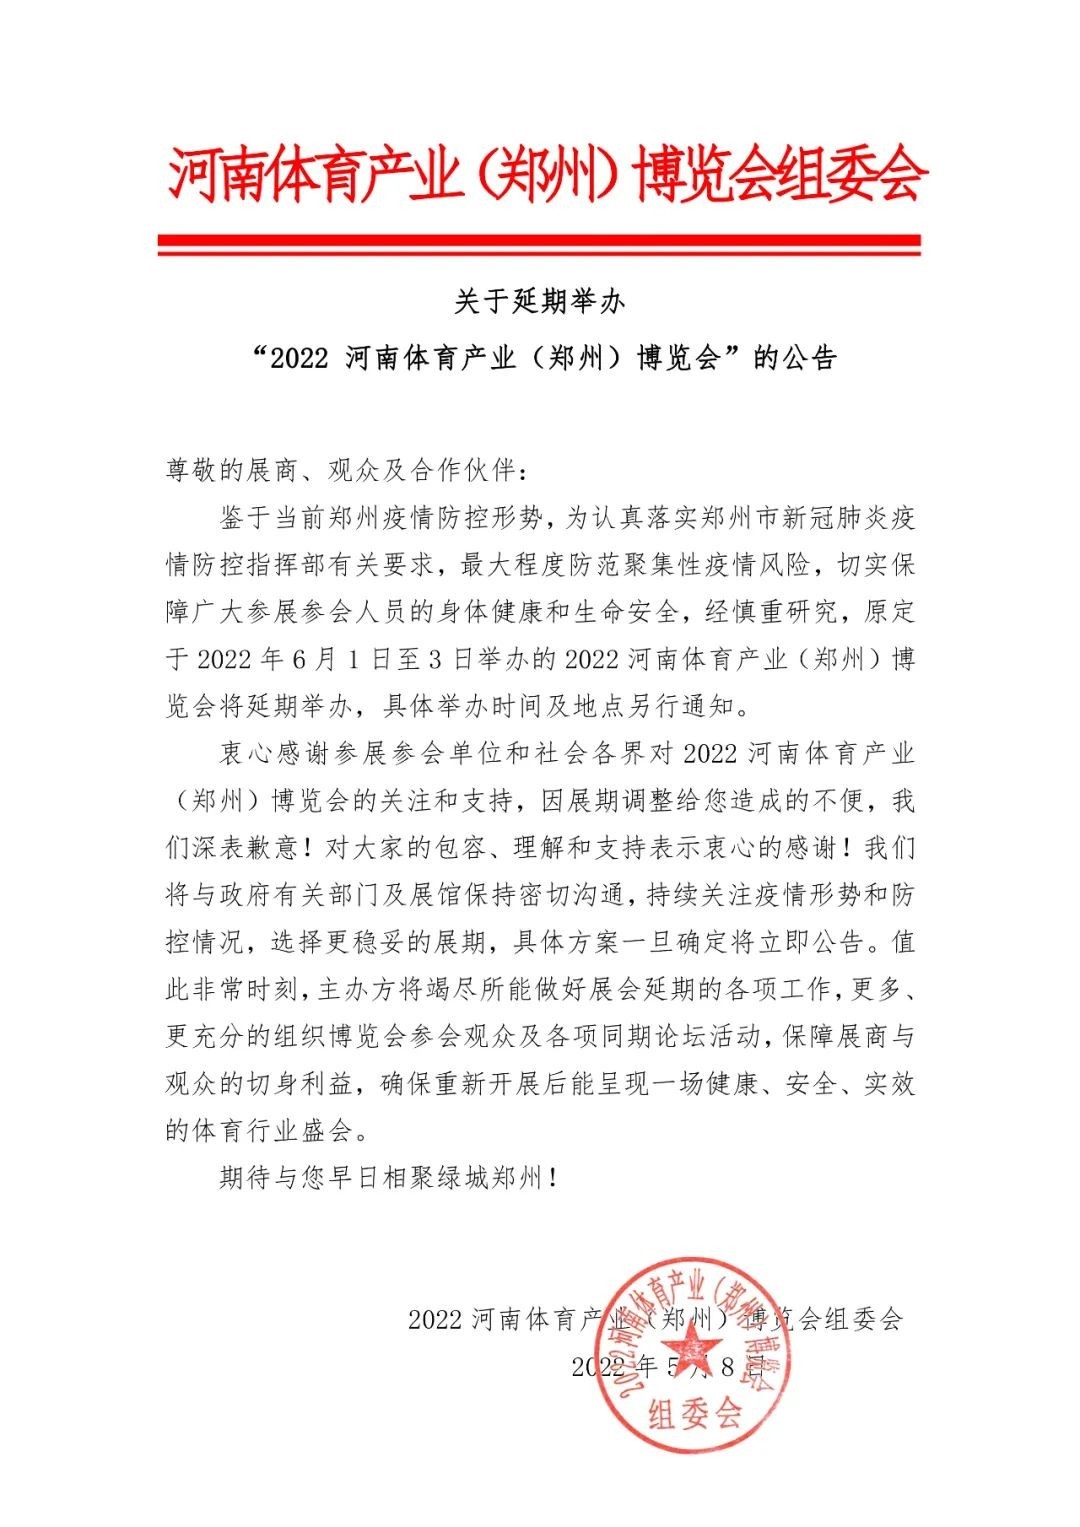 2022 河南體育產業（鄭州）博覽會因疫情延期舉辦